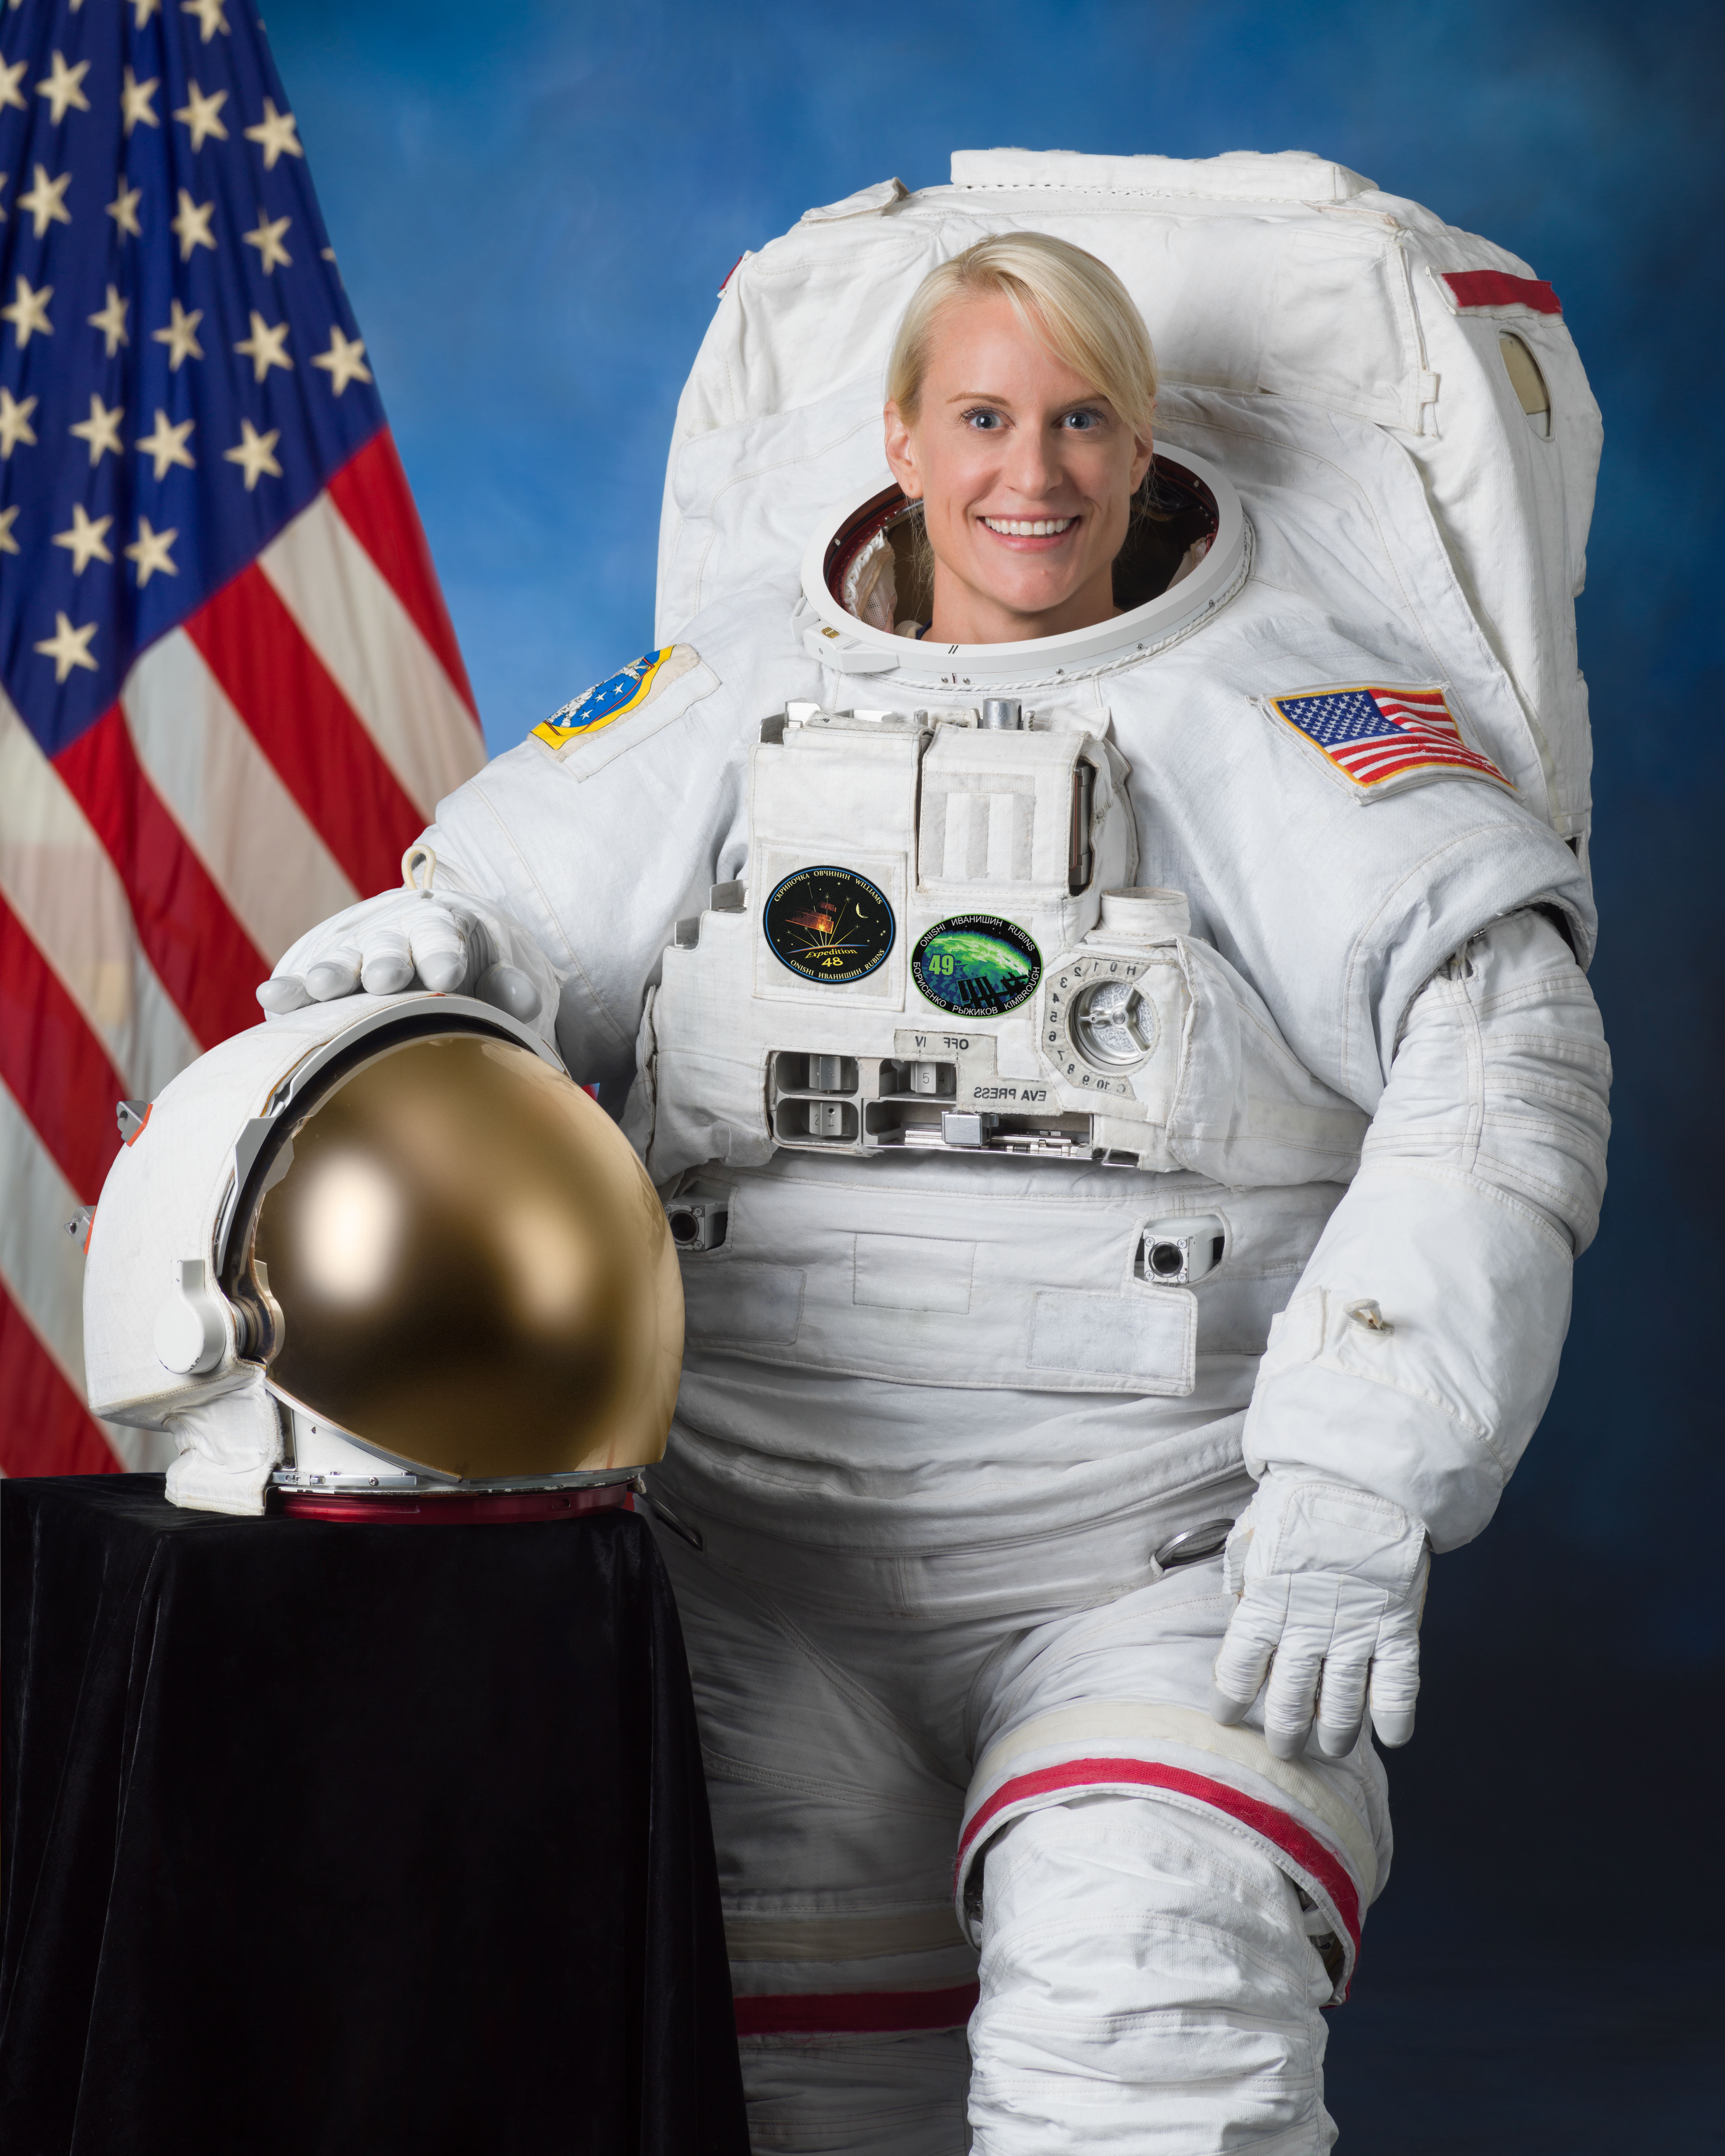 Kate Rubins nasceu em outubro de 1978; se escolhida, terá 44 anos quando pisar na Lua (Foto: NASA)